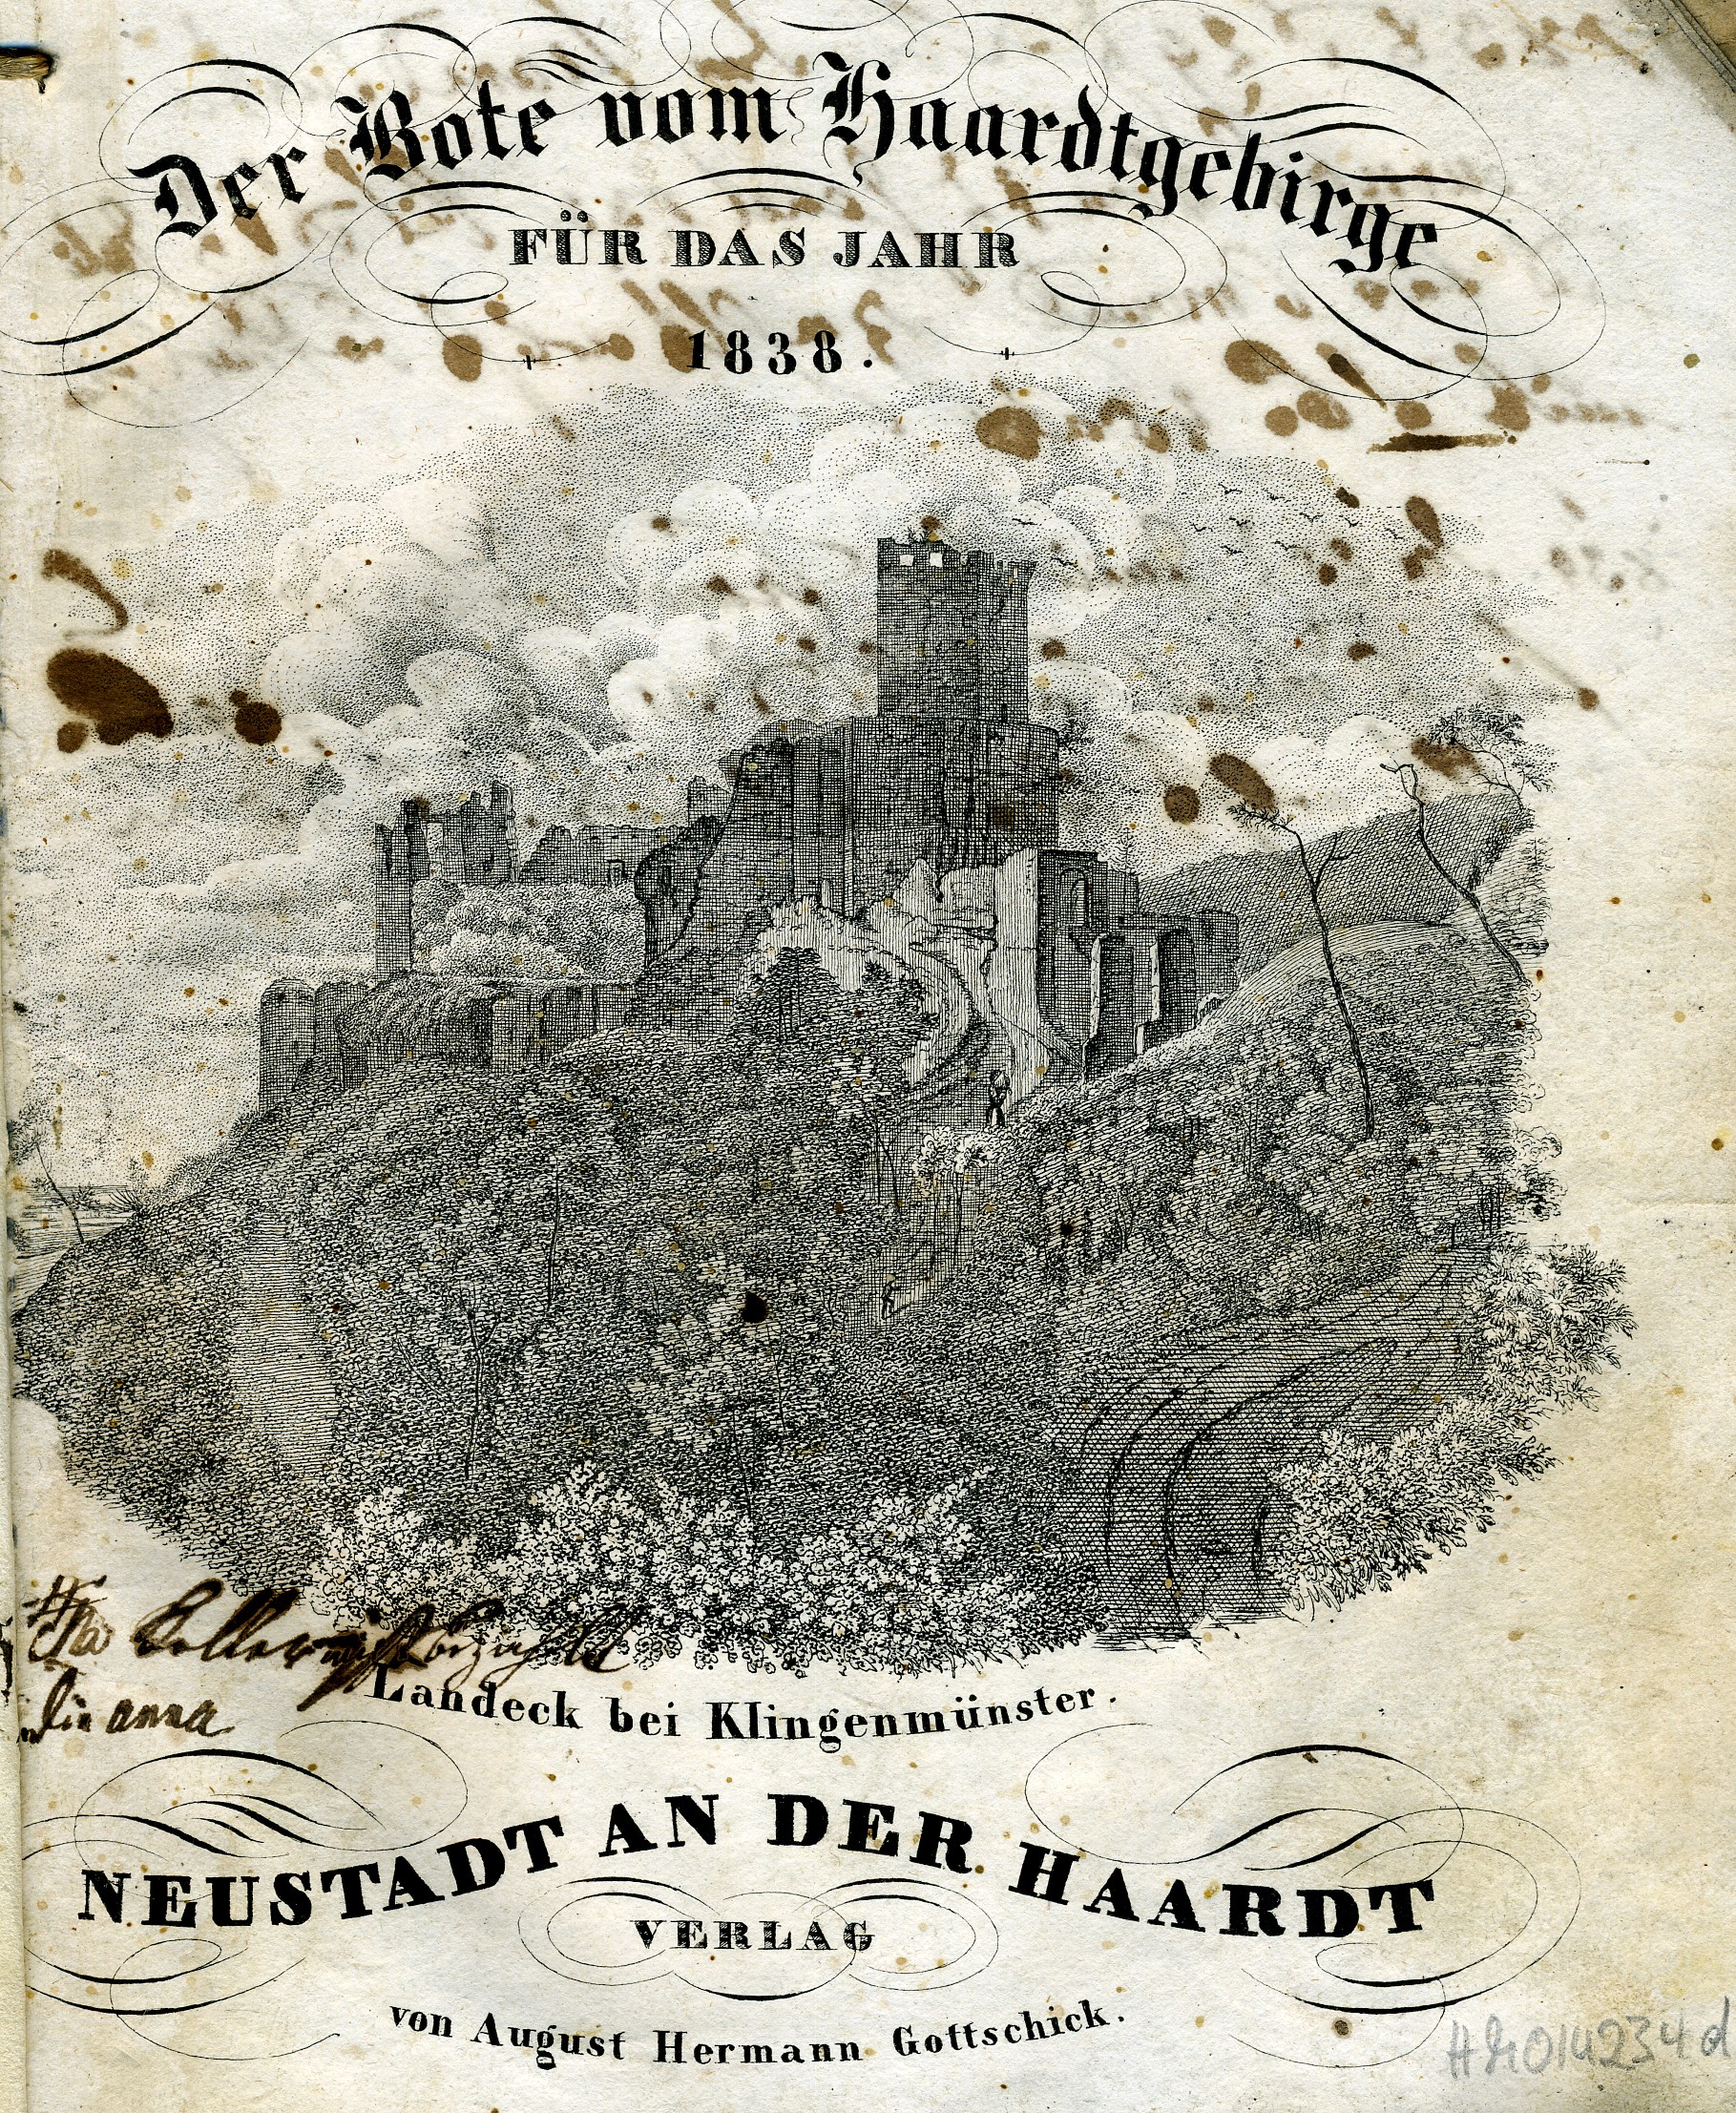 Der Bote vom Haardtgebirge für das Jahr 1838 (Historisches Museum der Pfalz, Speyer CC BY)